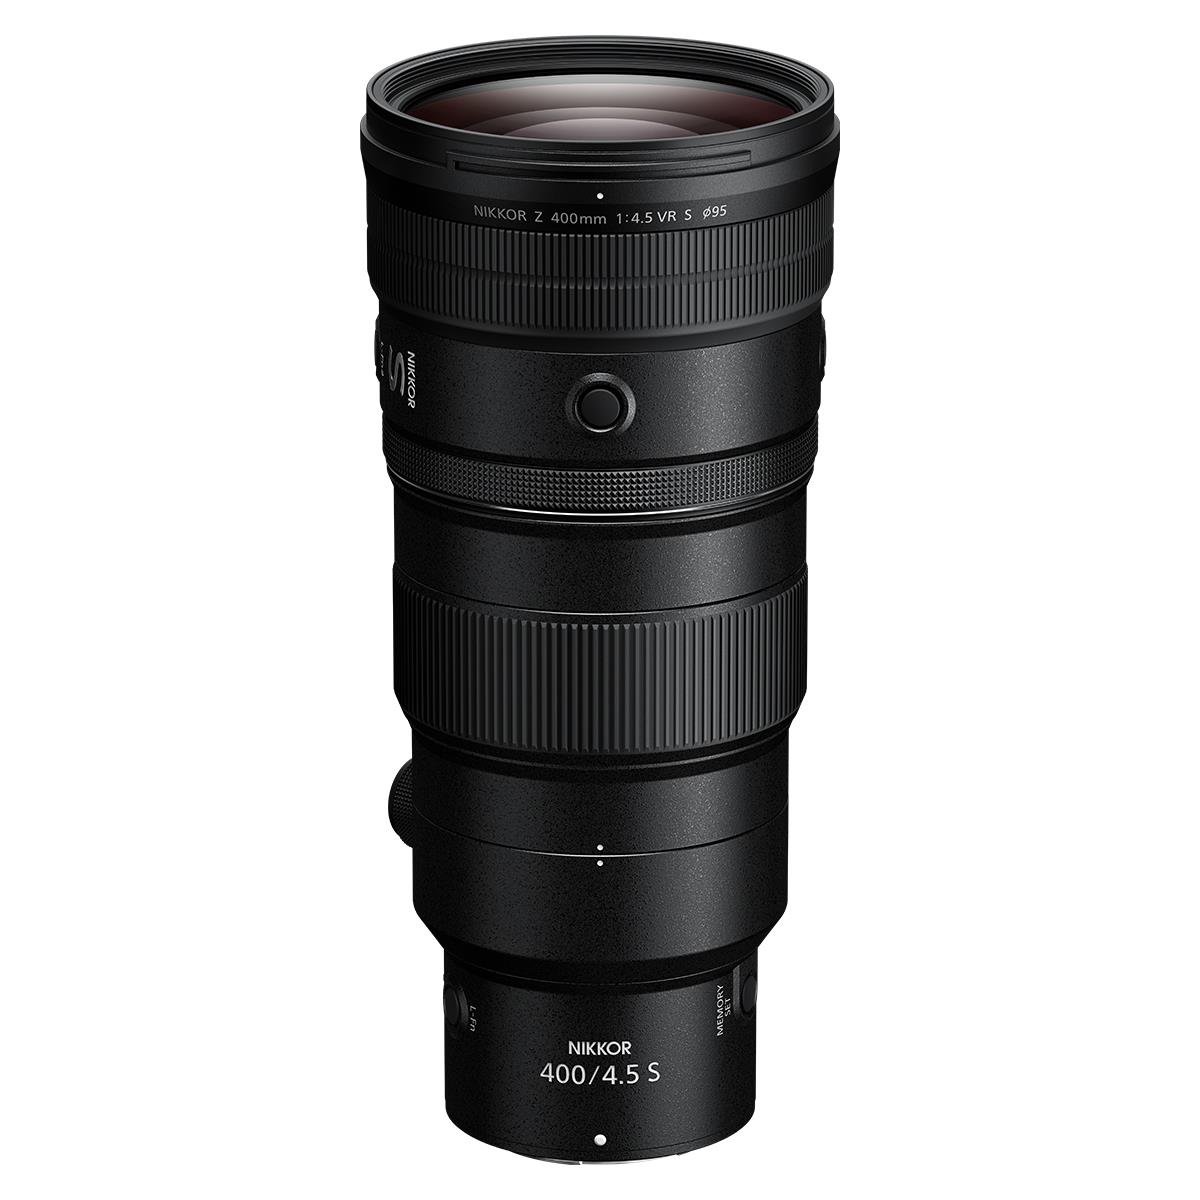 Nikon Z 400mm F4.5 VR S Lens